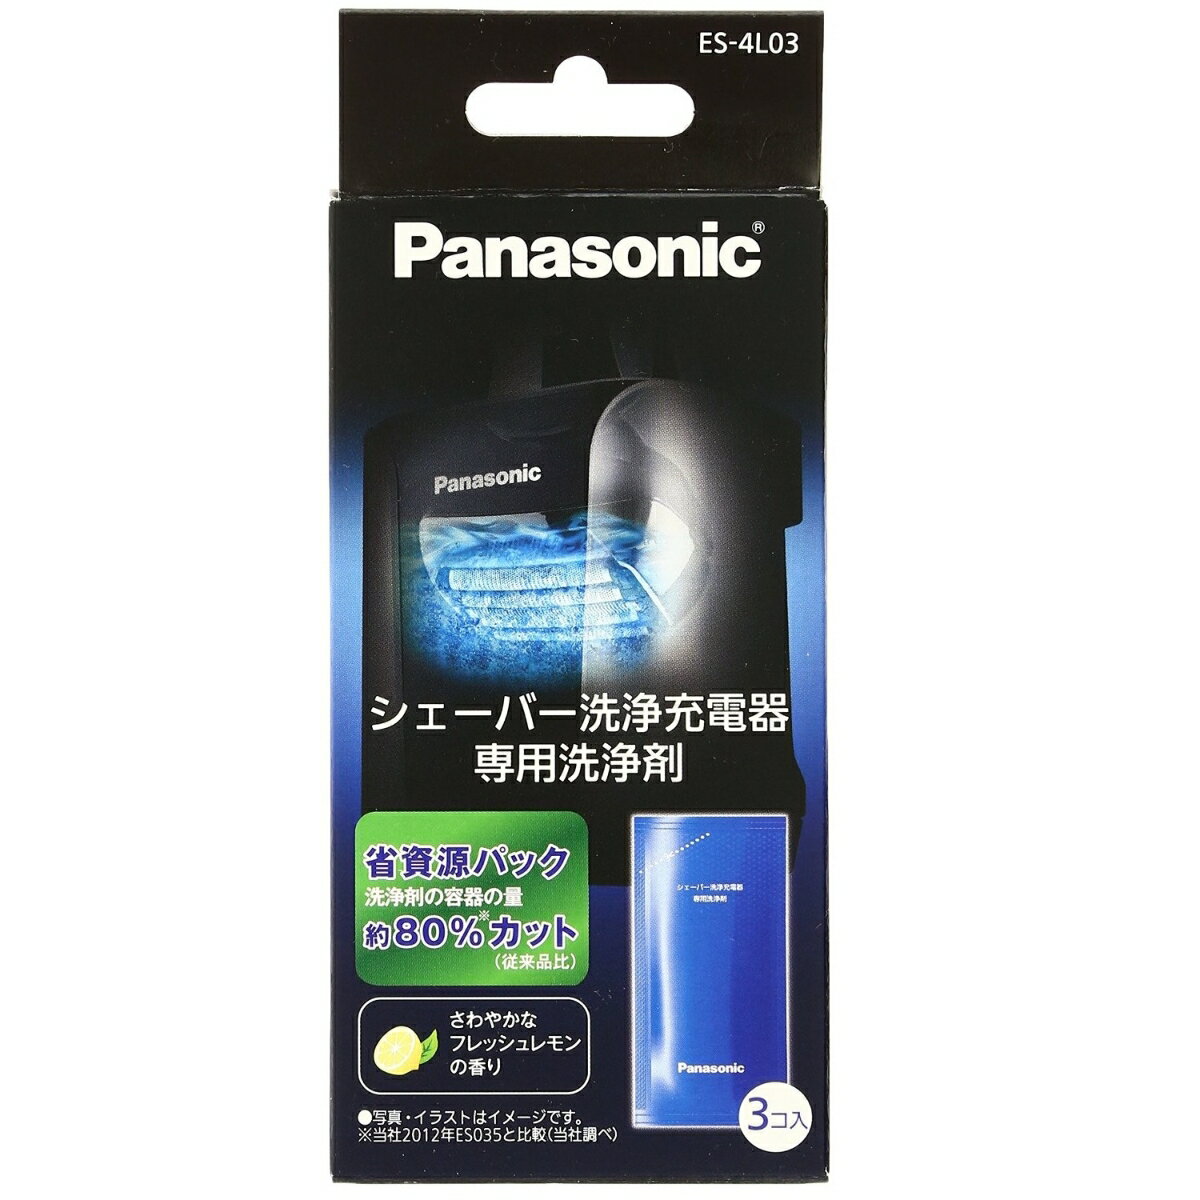 Panasonic シェーバー洗浄充電器専用洗浄剤 ES-4L03